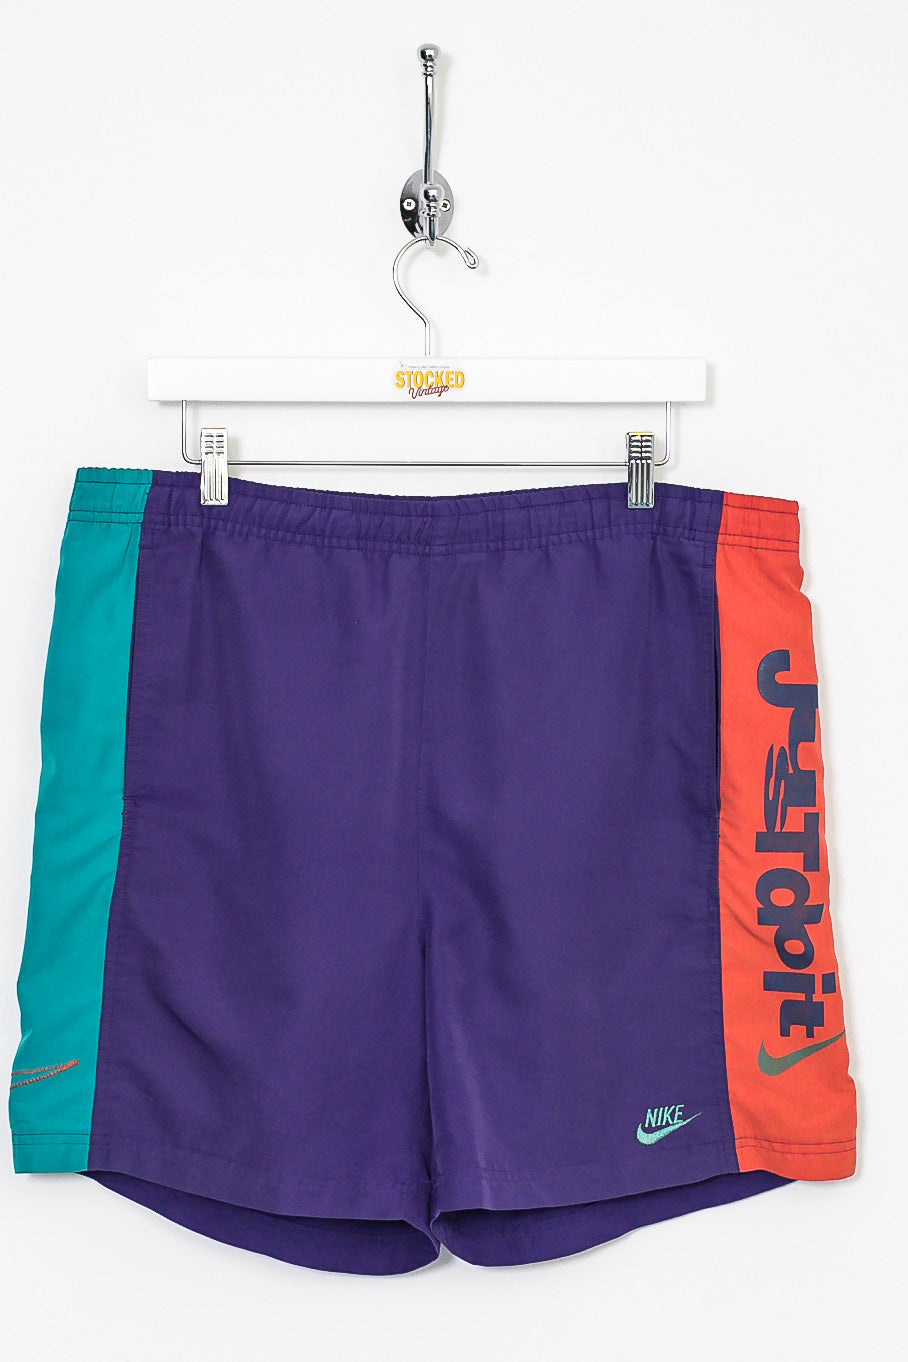 80s Nike Shorts (L)